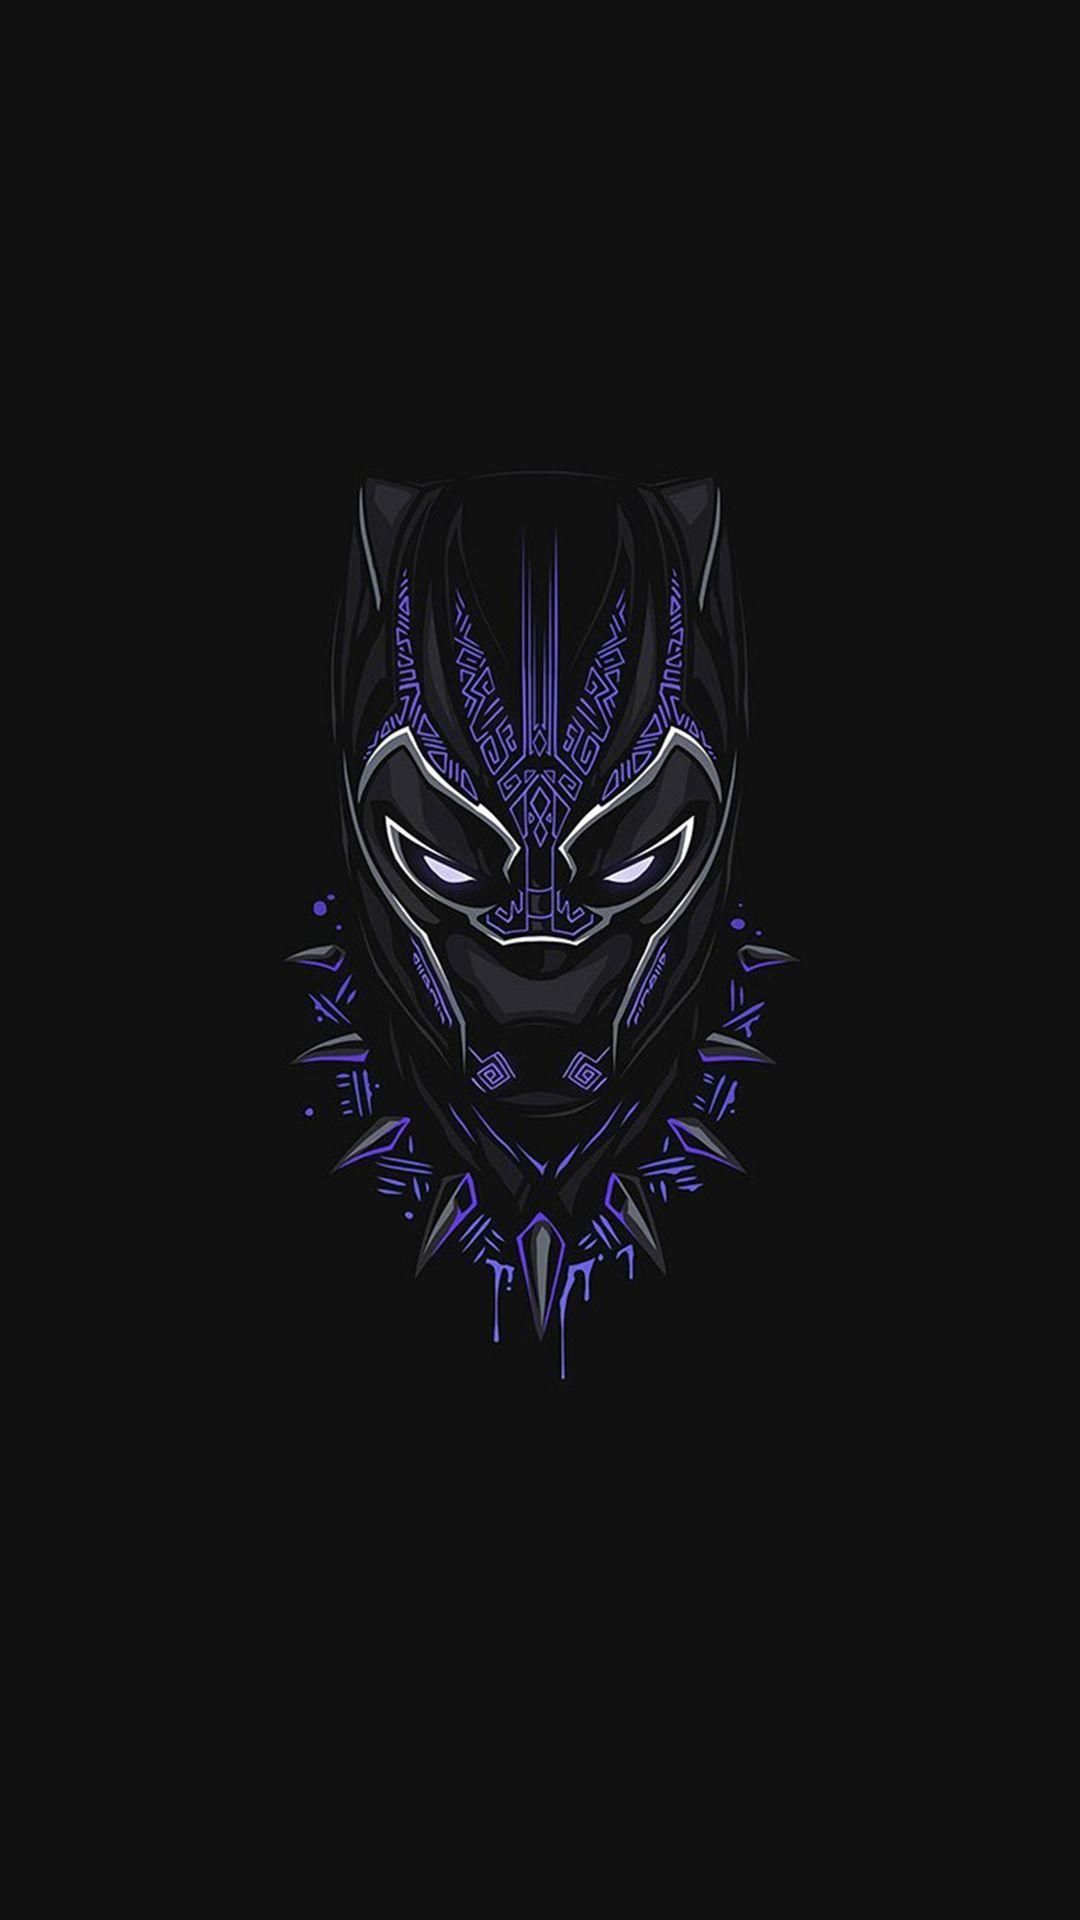 Black Panther Marvel Phone Wallpaper Free Black Panther Marvel Phone Background